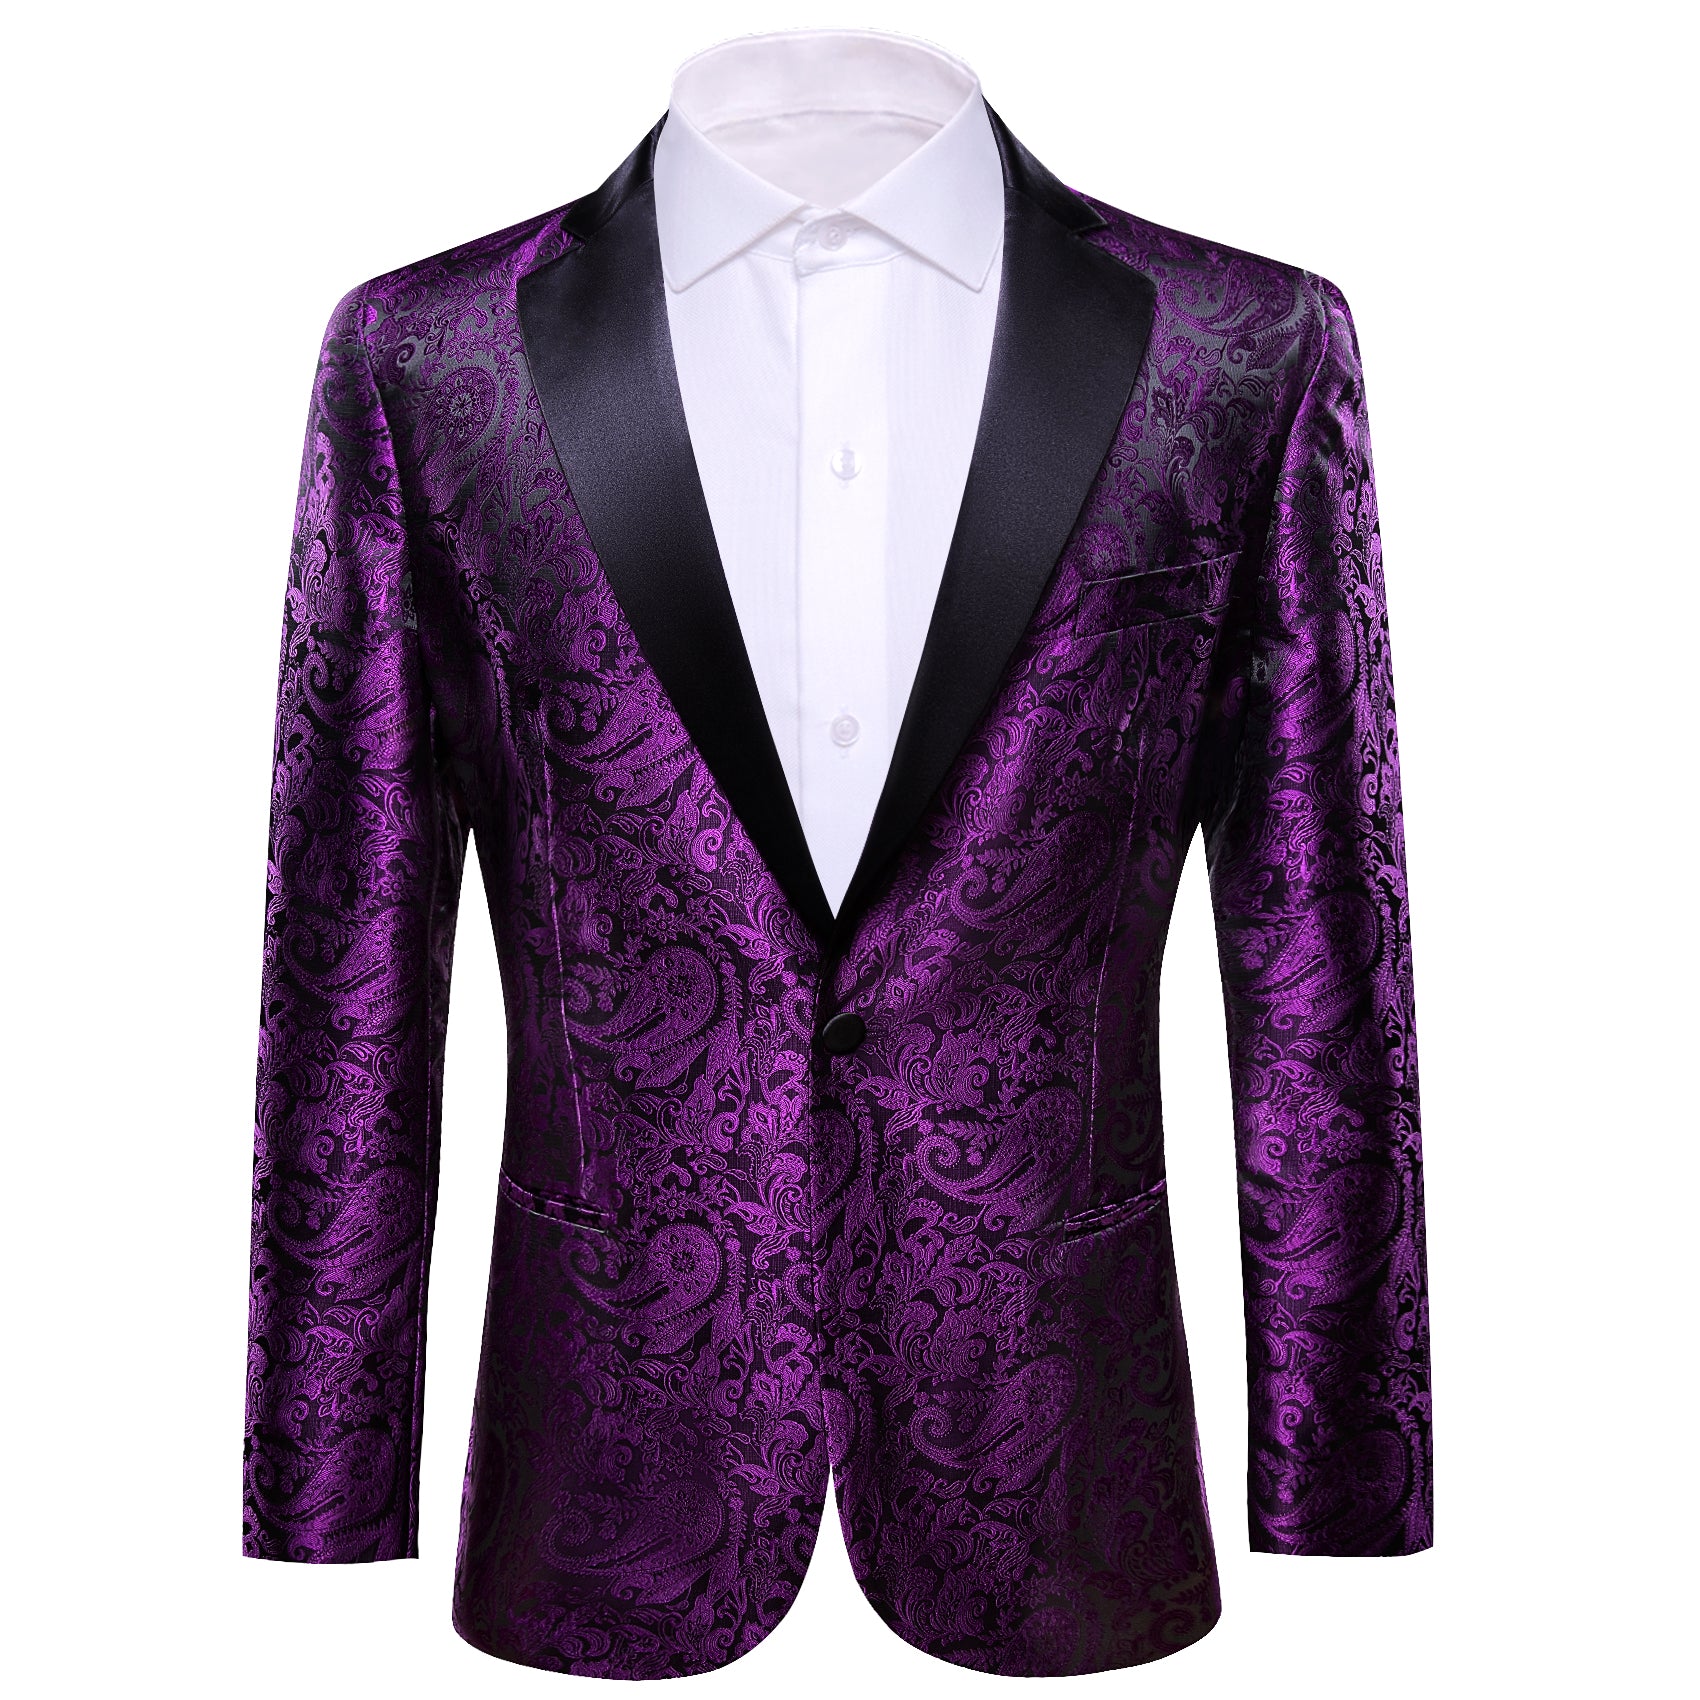 Barry.wang Men's Suit Purple Paisley Silk Notched Collar Suit Jacket